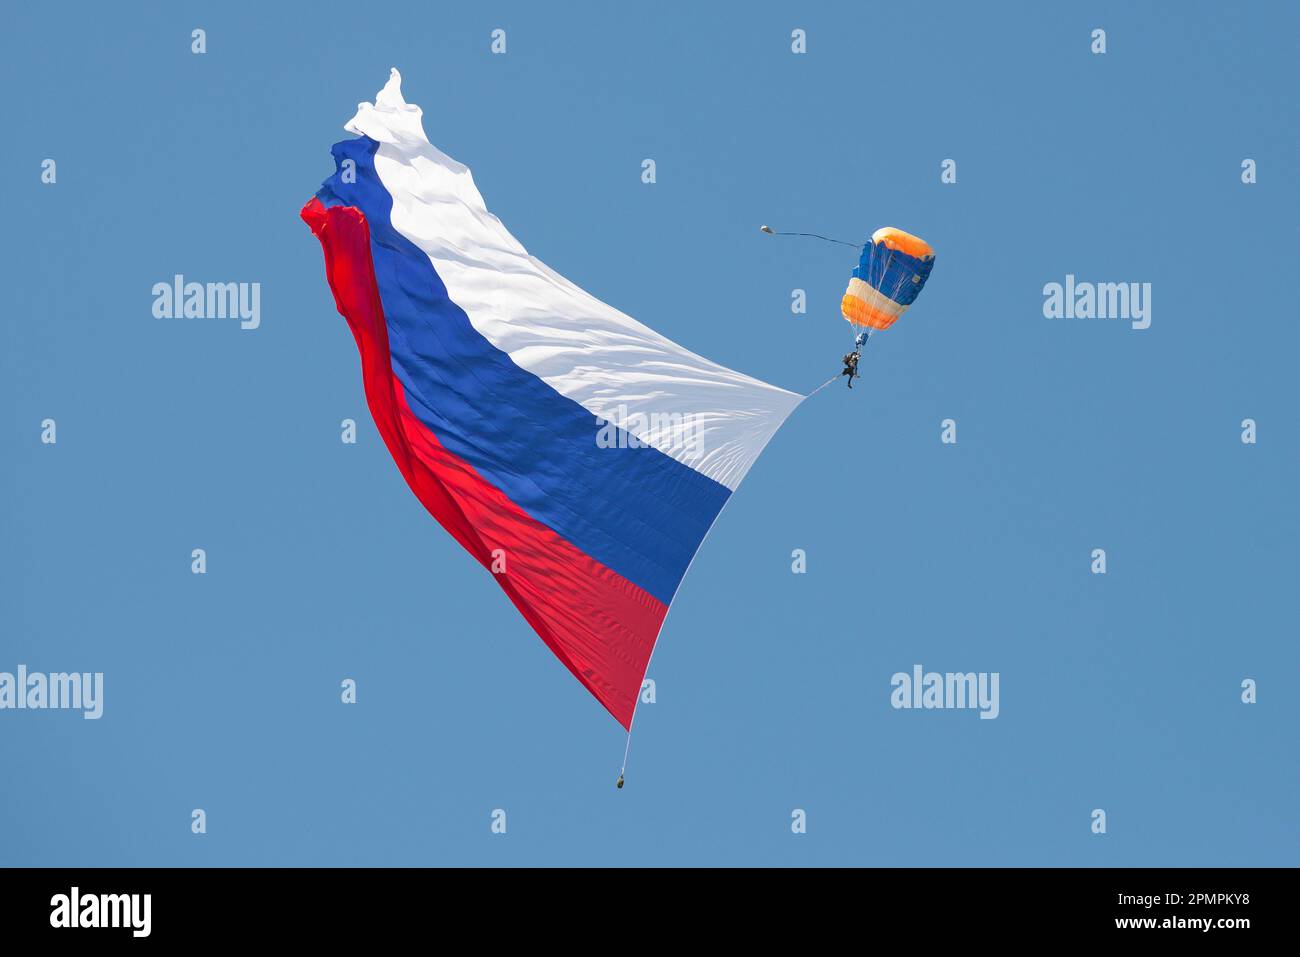 ZHUKOVSKY, RUSSIA - 30 AGOSTO 2019: Skydiver con una grande bandiera russa in un cielo blu senza nuvole. Frammento dell'apertura del MAKS-2019 Foto Stock